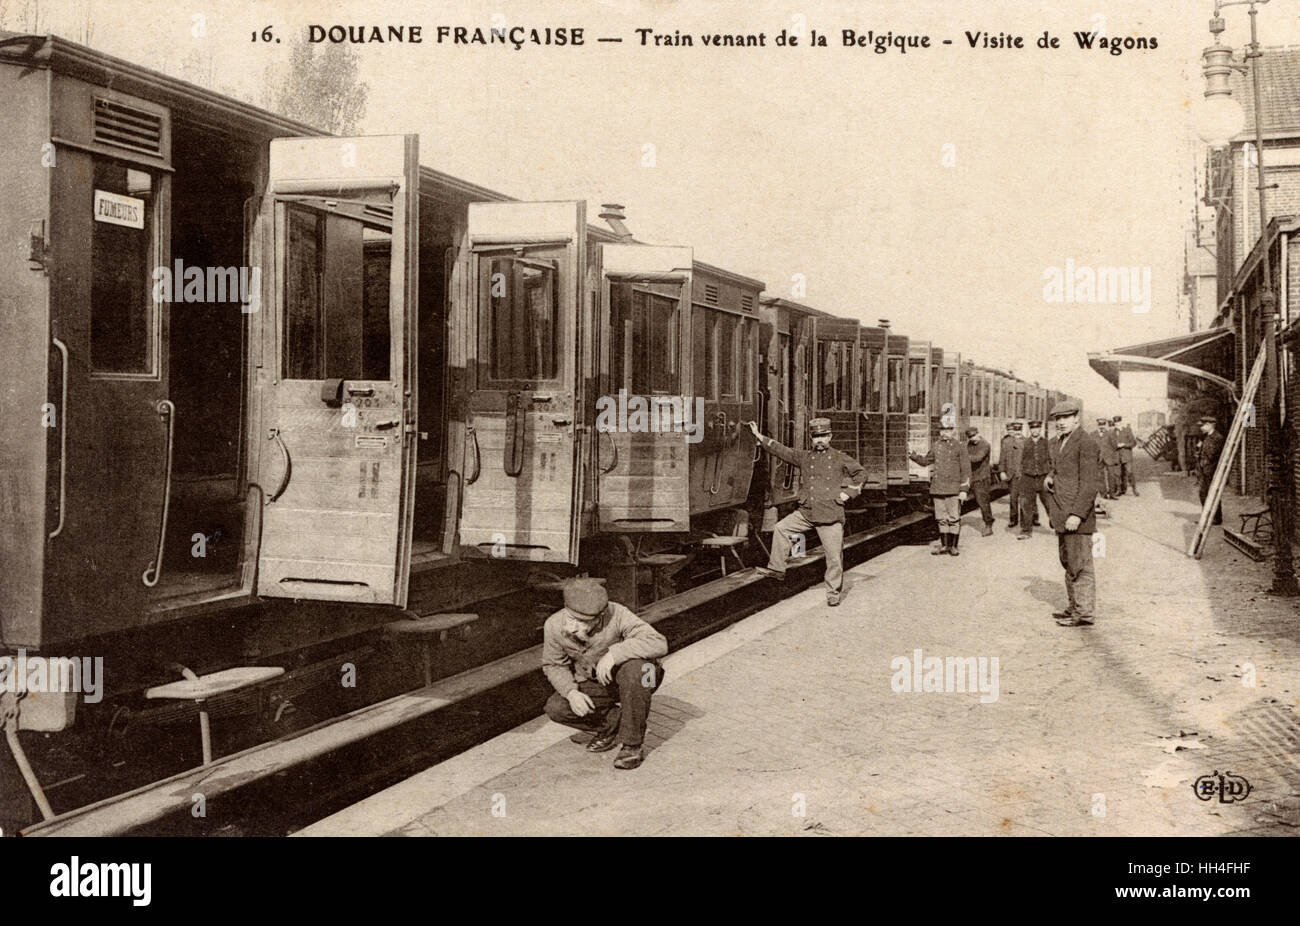 WW1 - Gare de Haumont, France - douaniers français Banque D'Images